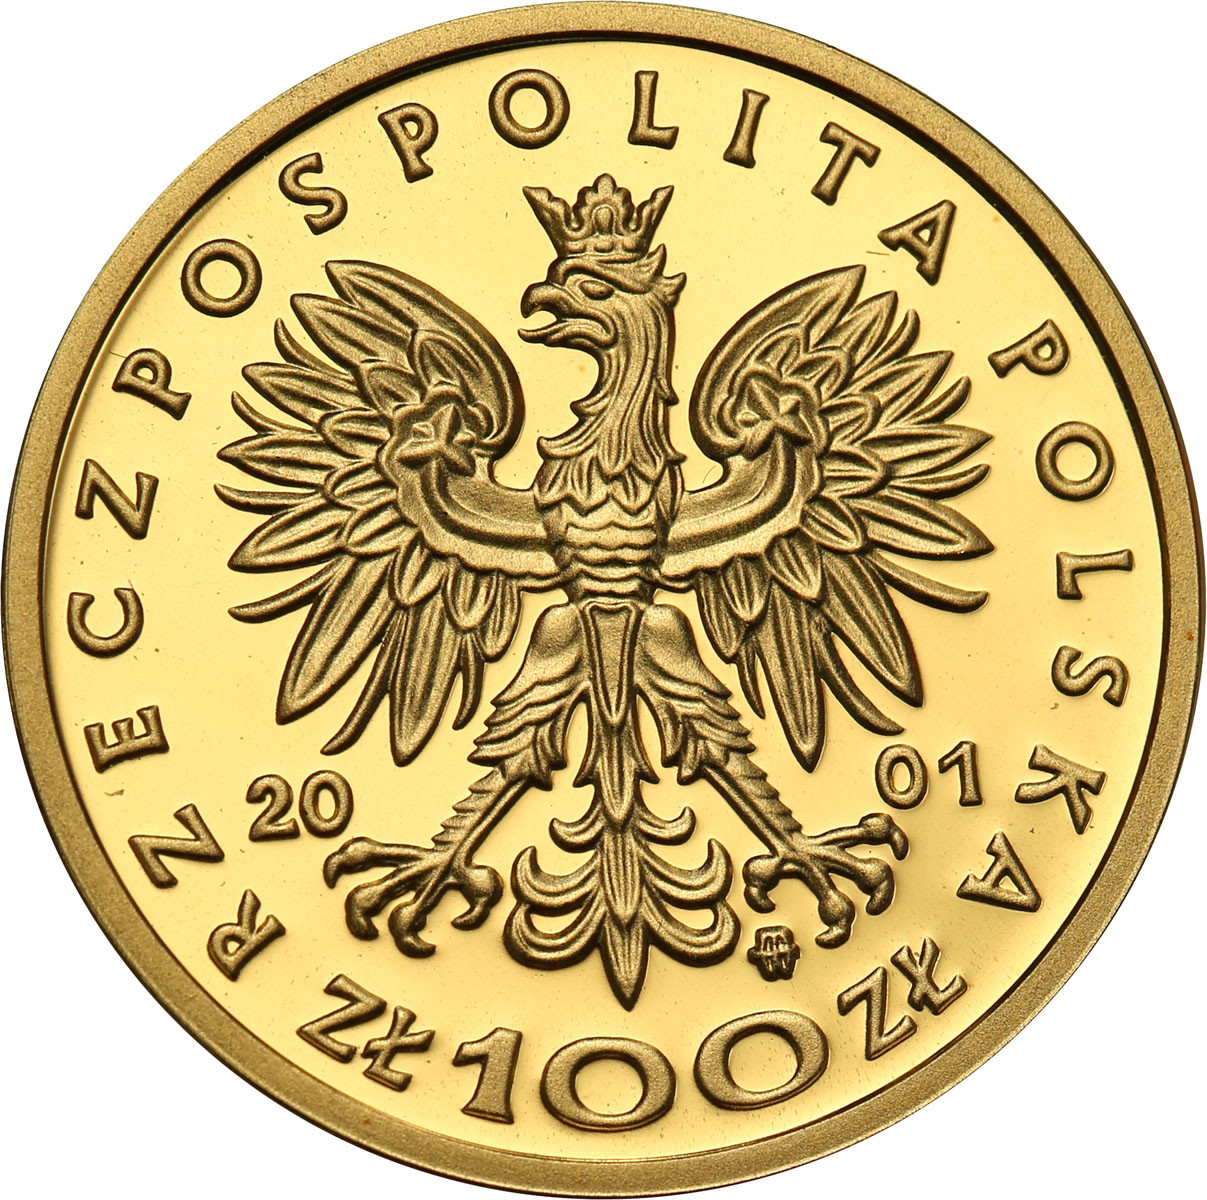 III RP. 100 złotych 2001 Jan III Sobieski